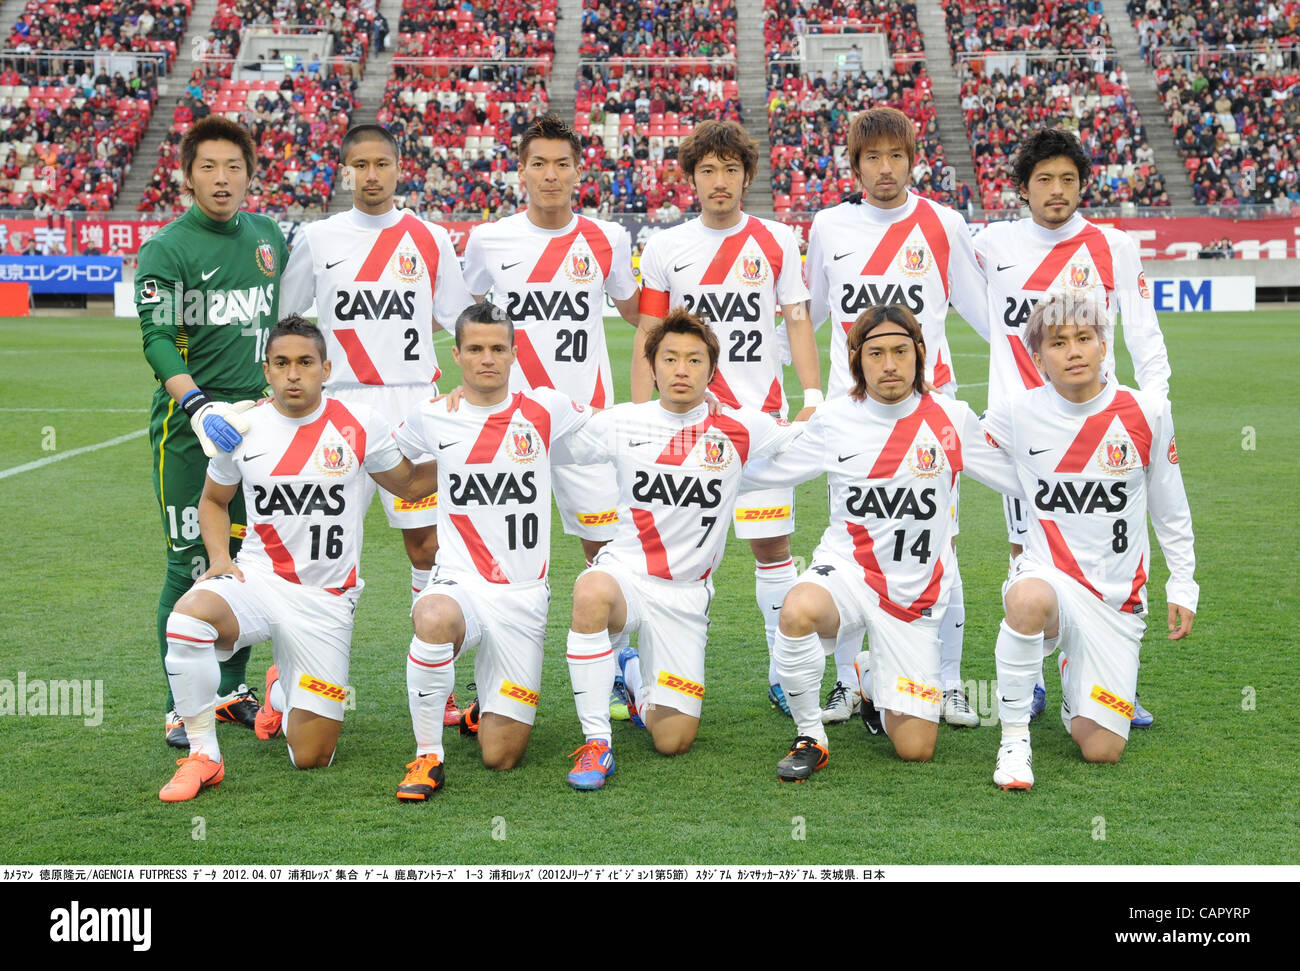 Urawa Reds team group line-up, APRIL 7, 2012 - Football / Soccer : Urawa Reds team group shot (Top row - L to R) Nobuhiro Kato, Keisuke Tsuboi, Tomoaki Makino, Yuki Abe, Mitsuru Nagata, Keita Suzuki, (Bottom row - L to R) Popo, Marcio Richardes, Tsukasa Umesaki, Tadaaki Hirakawa and Yosuke Kashiwagi Stock Photo